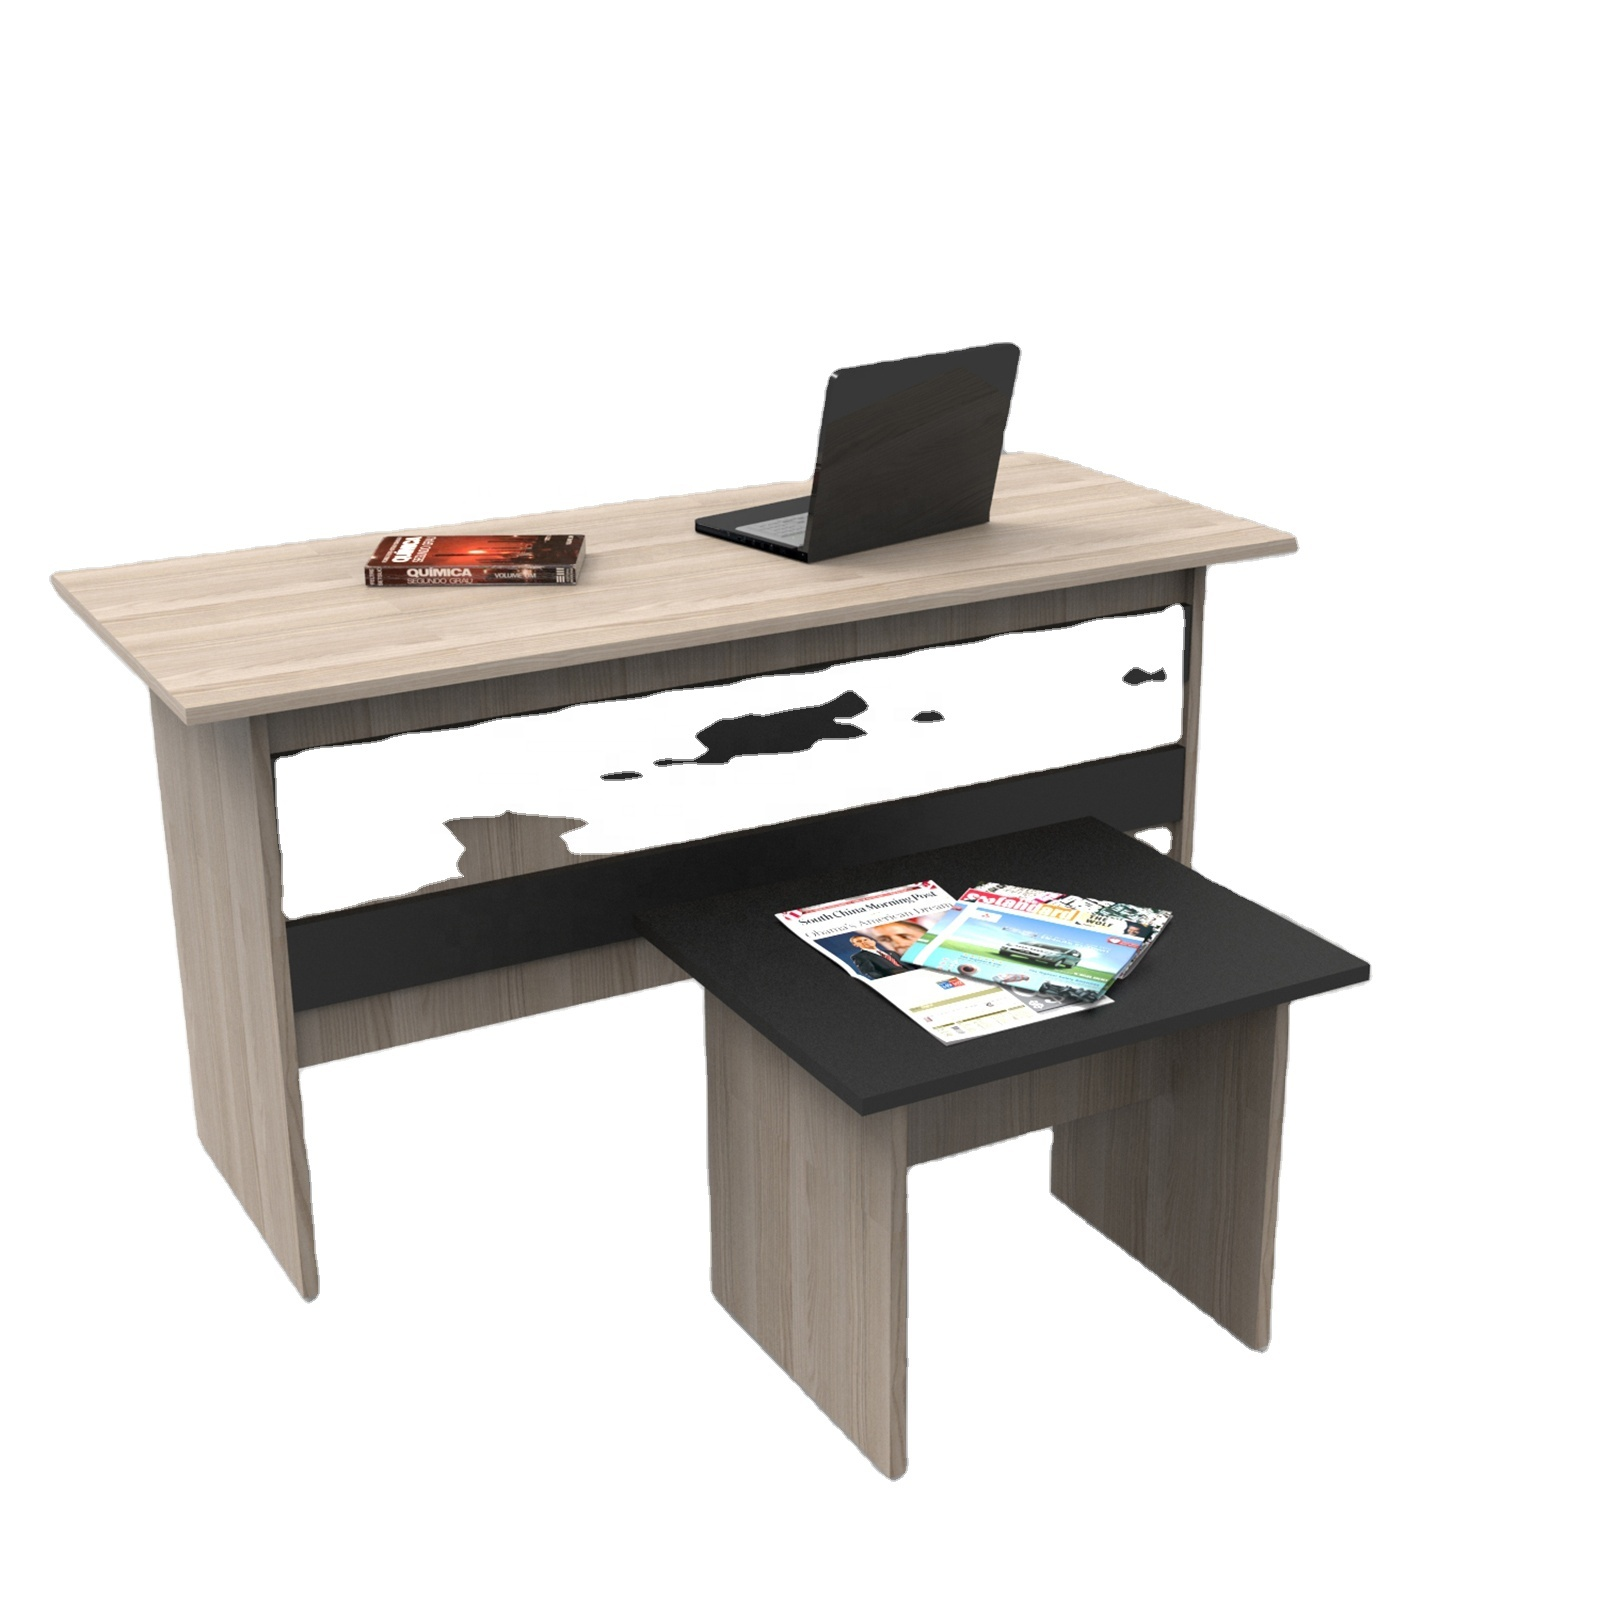 Yurudesign Muebles al por mayor con estructura metálica, juego de muebles de oficina con escritorio, mesa de centro